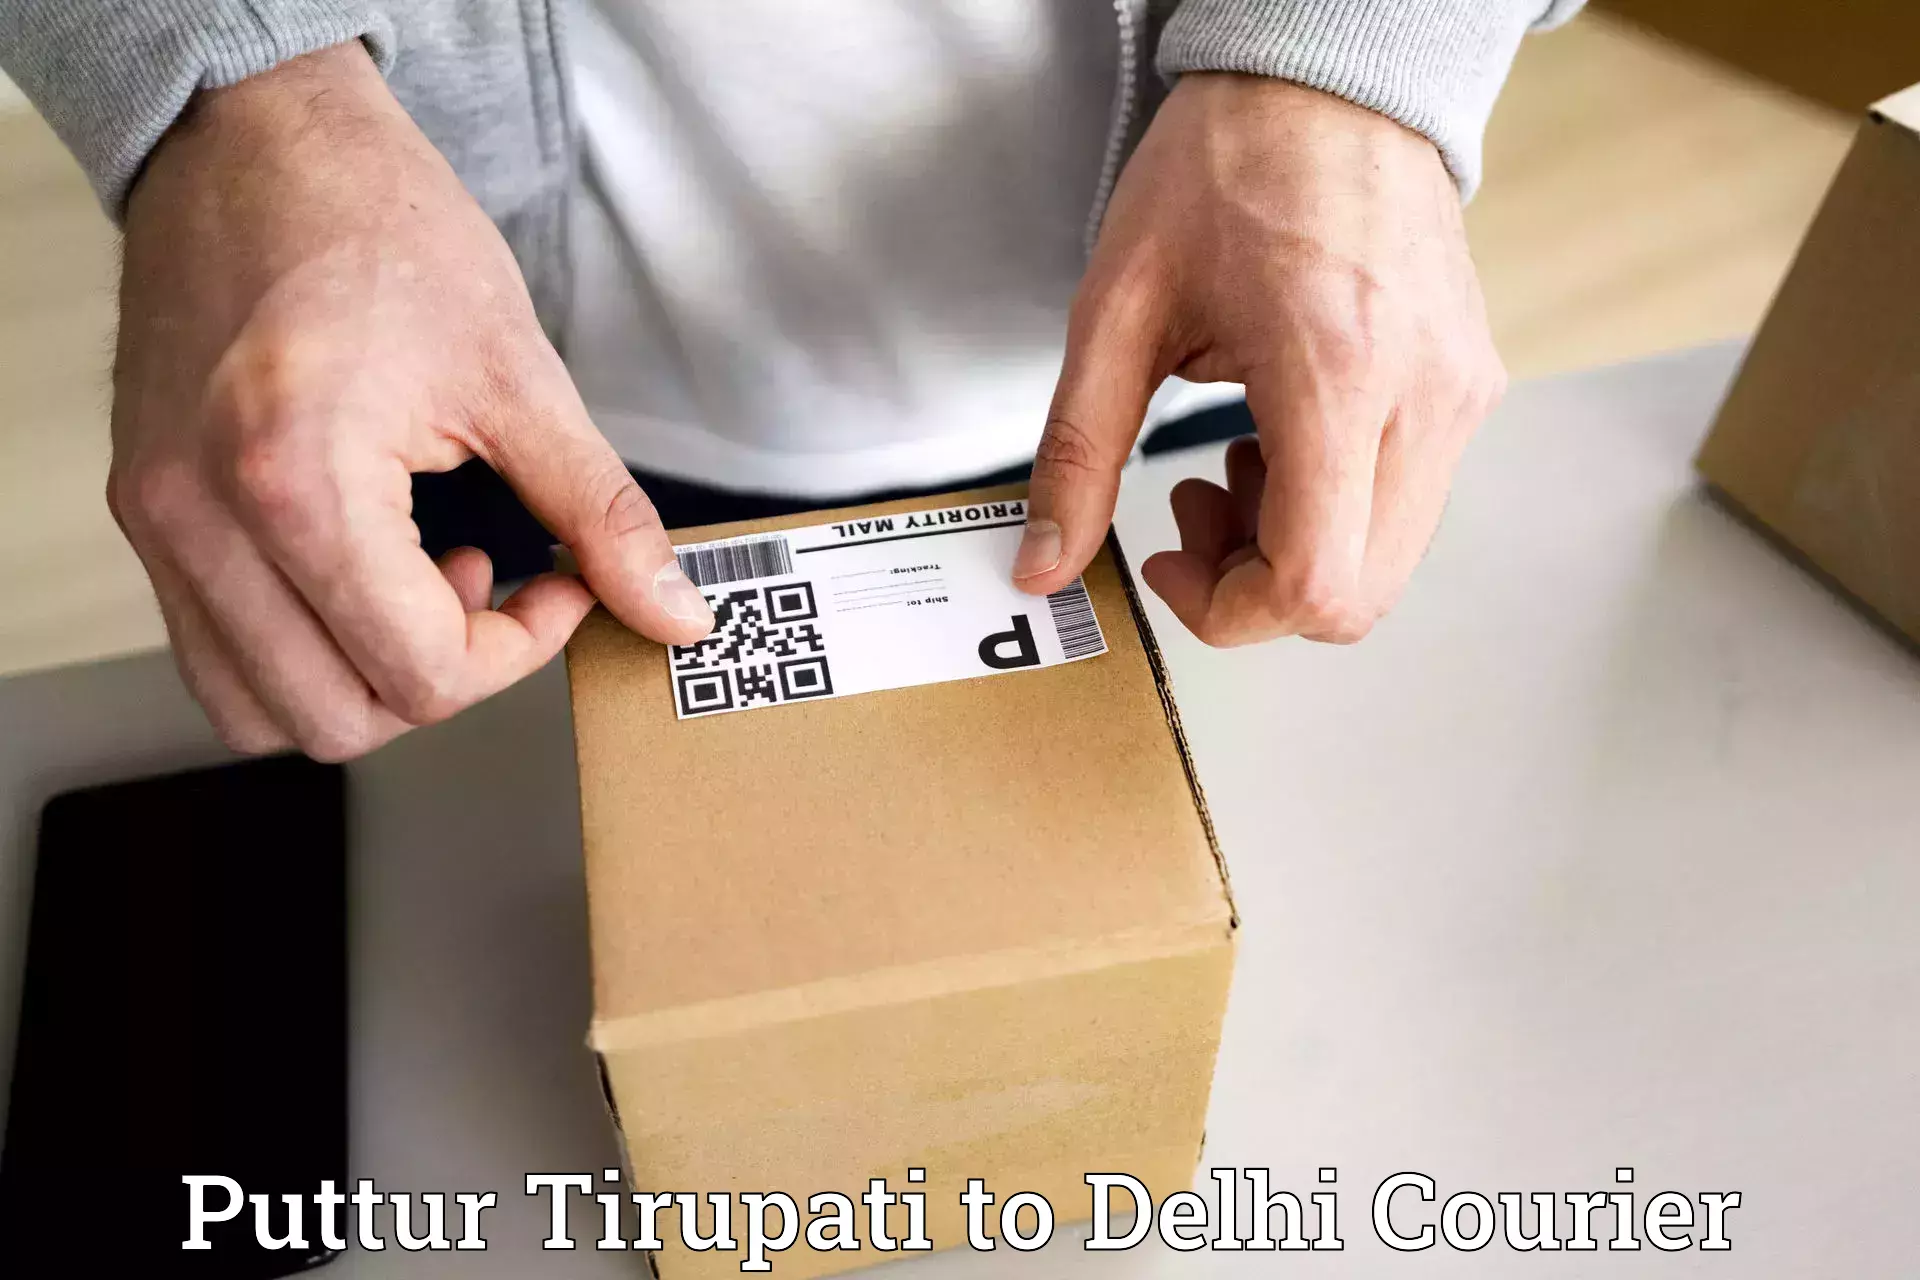 Express postal services Puttur Tirupati to IIT Delhi